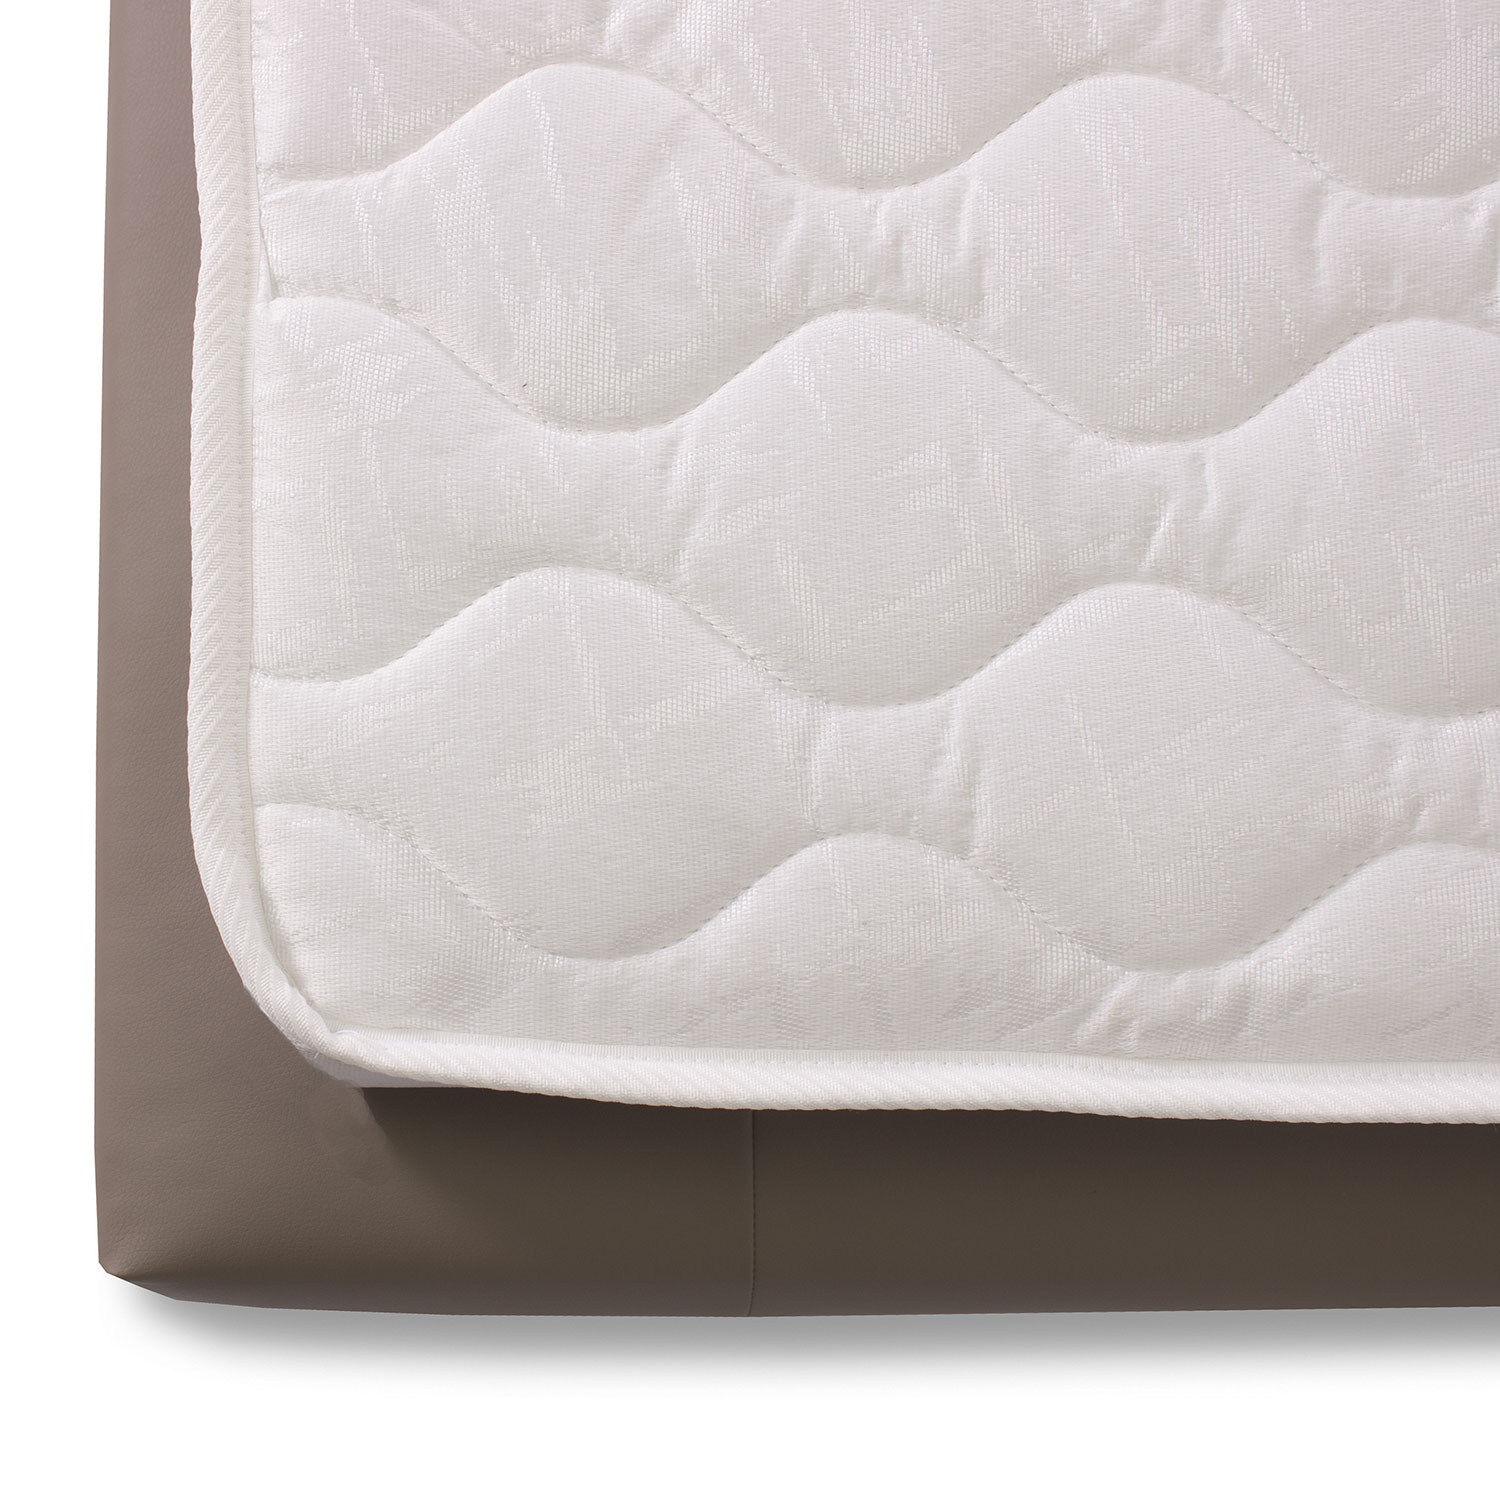 Materasso pieghevole per divano letto in waterfoam ortopedico